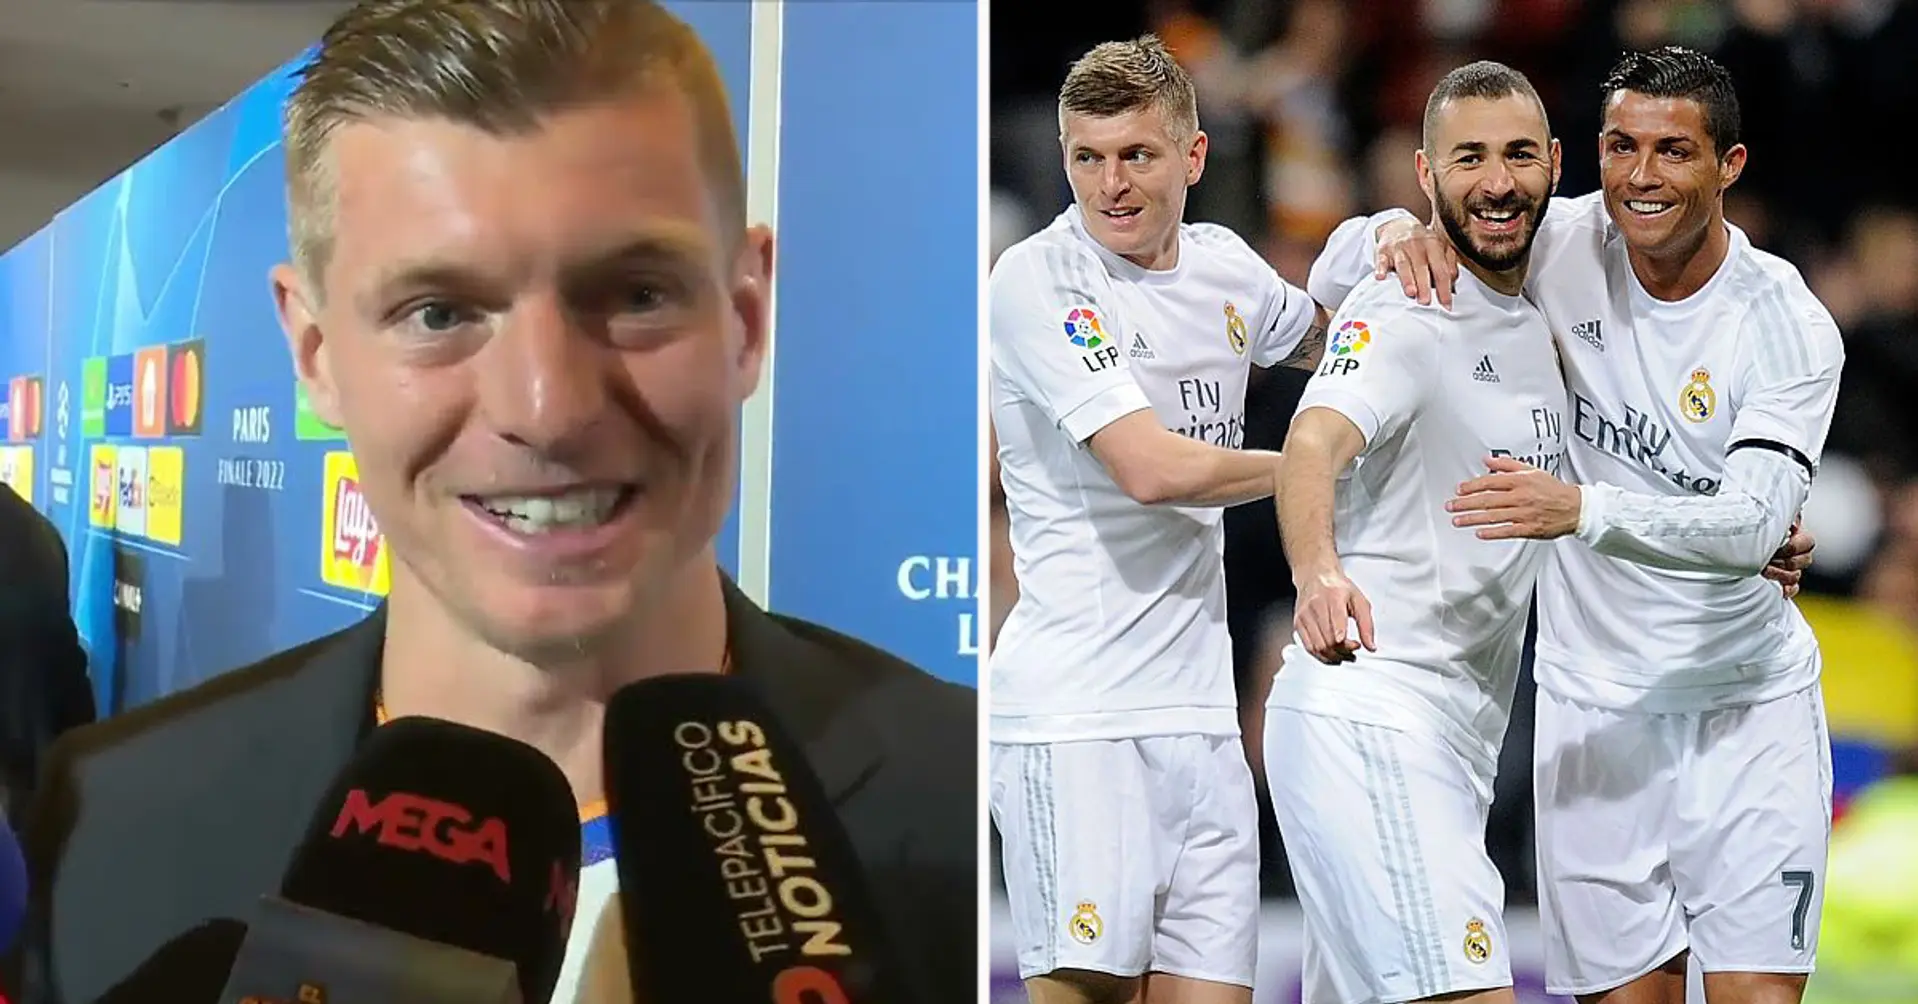 "Kroos, Benzema, Ronaldo, Modric und Ramos feiern eine Party. Wer bezahlt alles?" Toni Kroos' originelle Antwort